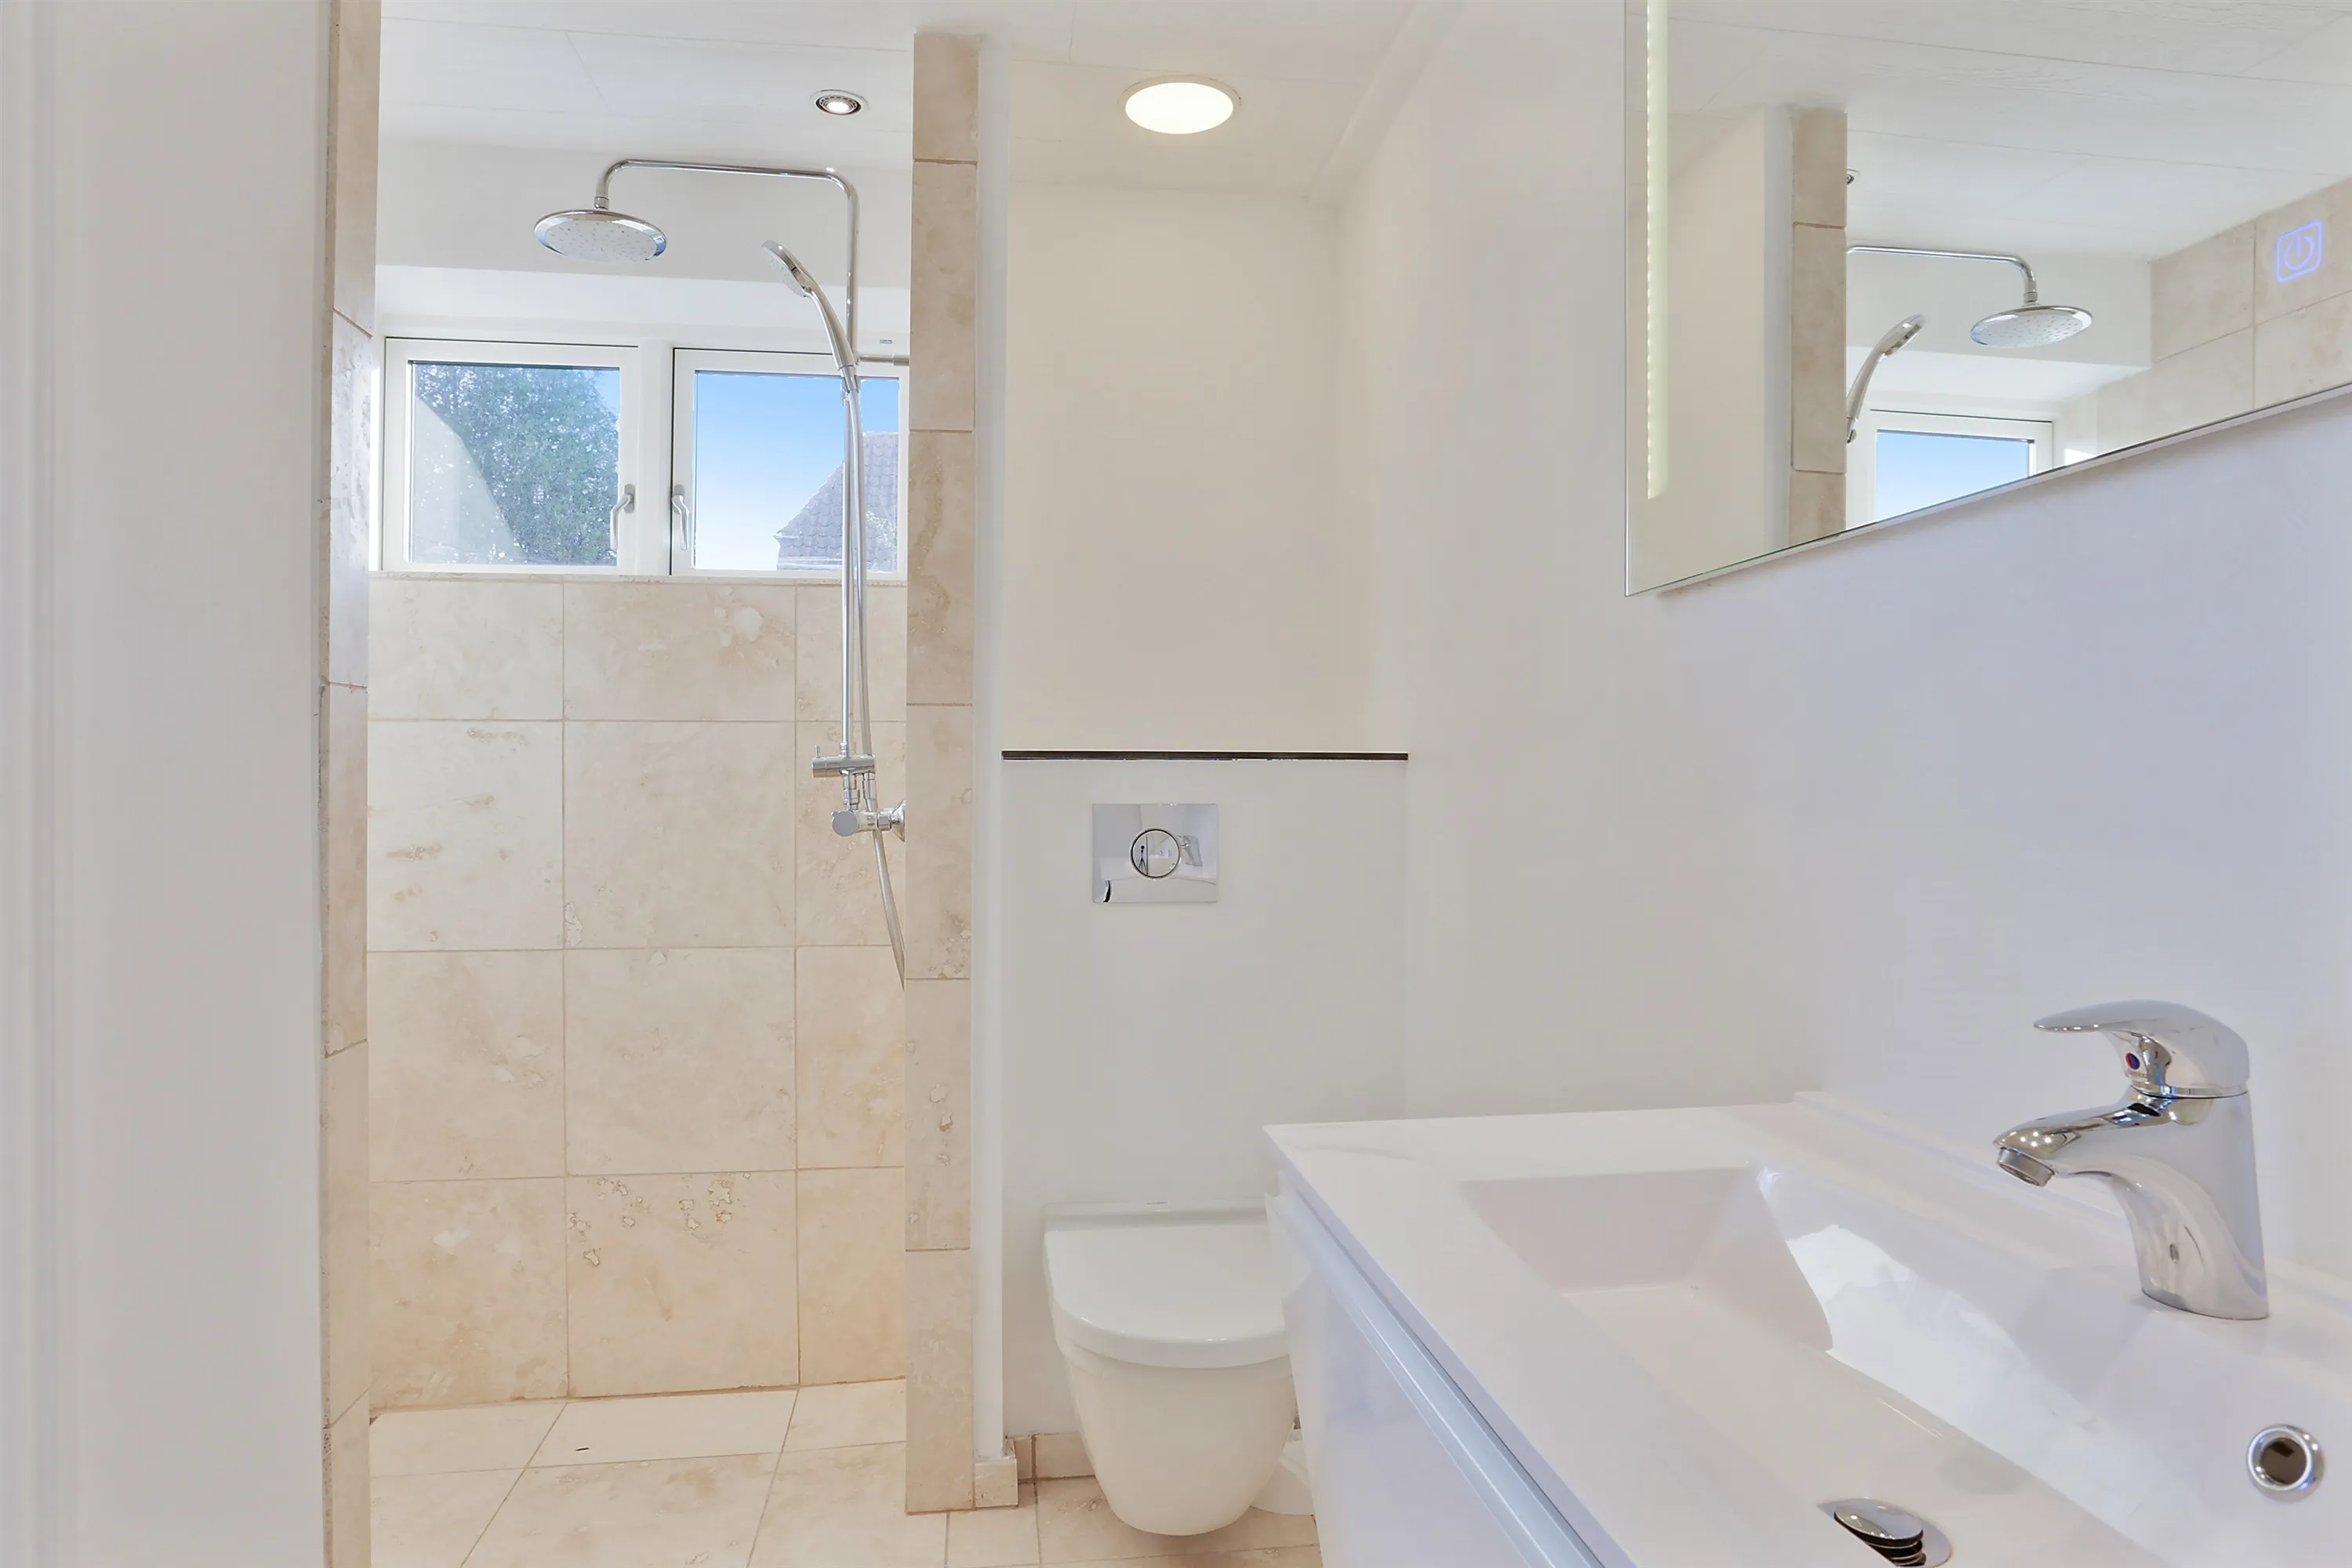 Nyt badeværelse med damixa vandhane, grohe toilet1 ⇒ Håndværker.dk -  Håndværker.dk